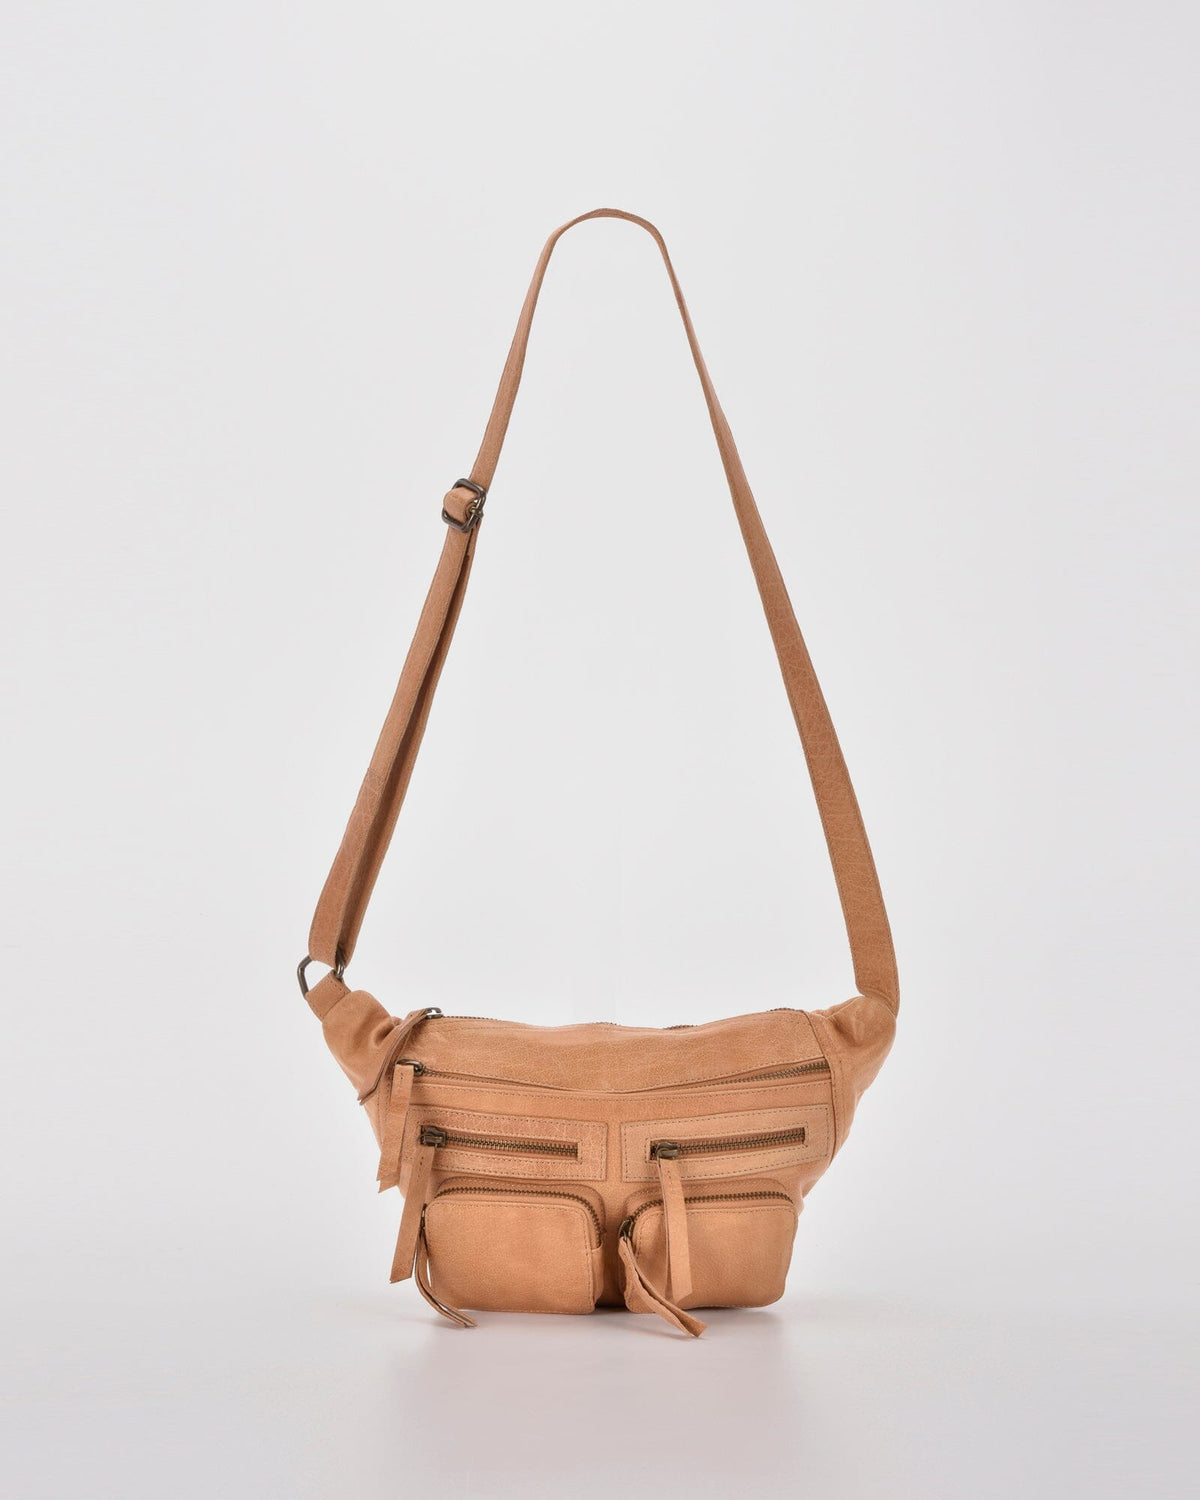 Bradshaw Zipped Leather Waist/Crossbody Bag